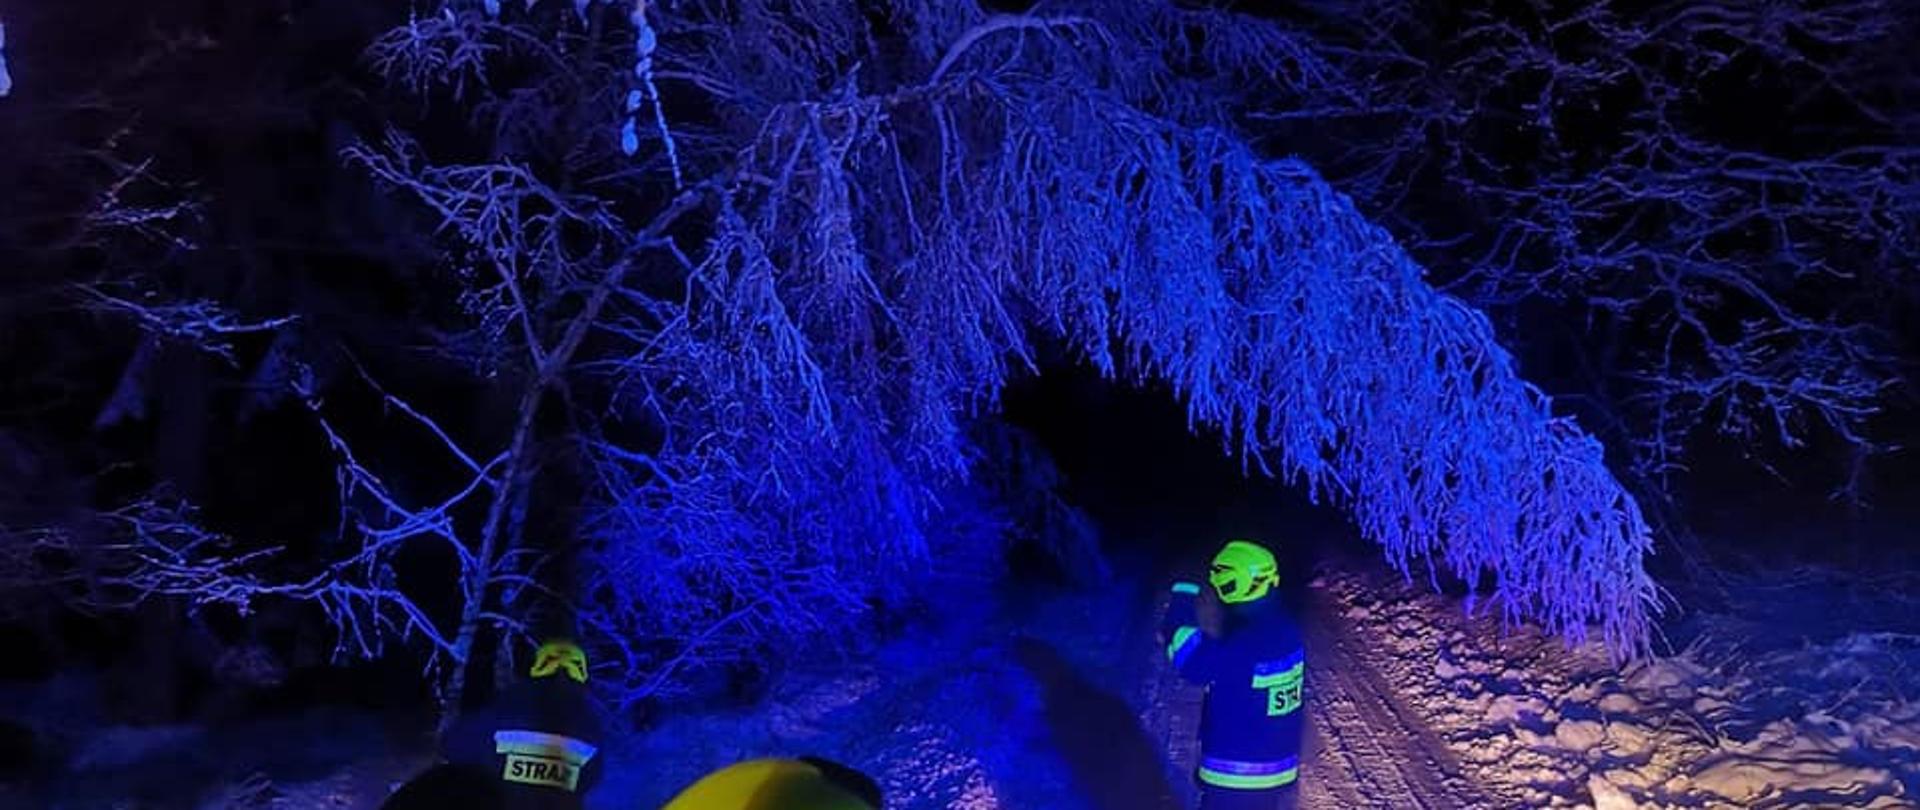 Zdjęcie przedstawia zaśnieżoną drogę nad którą zwisa drzewo pochylone od ciężaru szadzi i śniegu. Na zdjęciu widać strażaków w czarnych ubraniach specjalnych oraz w żółtych hełmach stojących na drodze. zdjęcie wykonano nocą. 